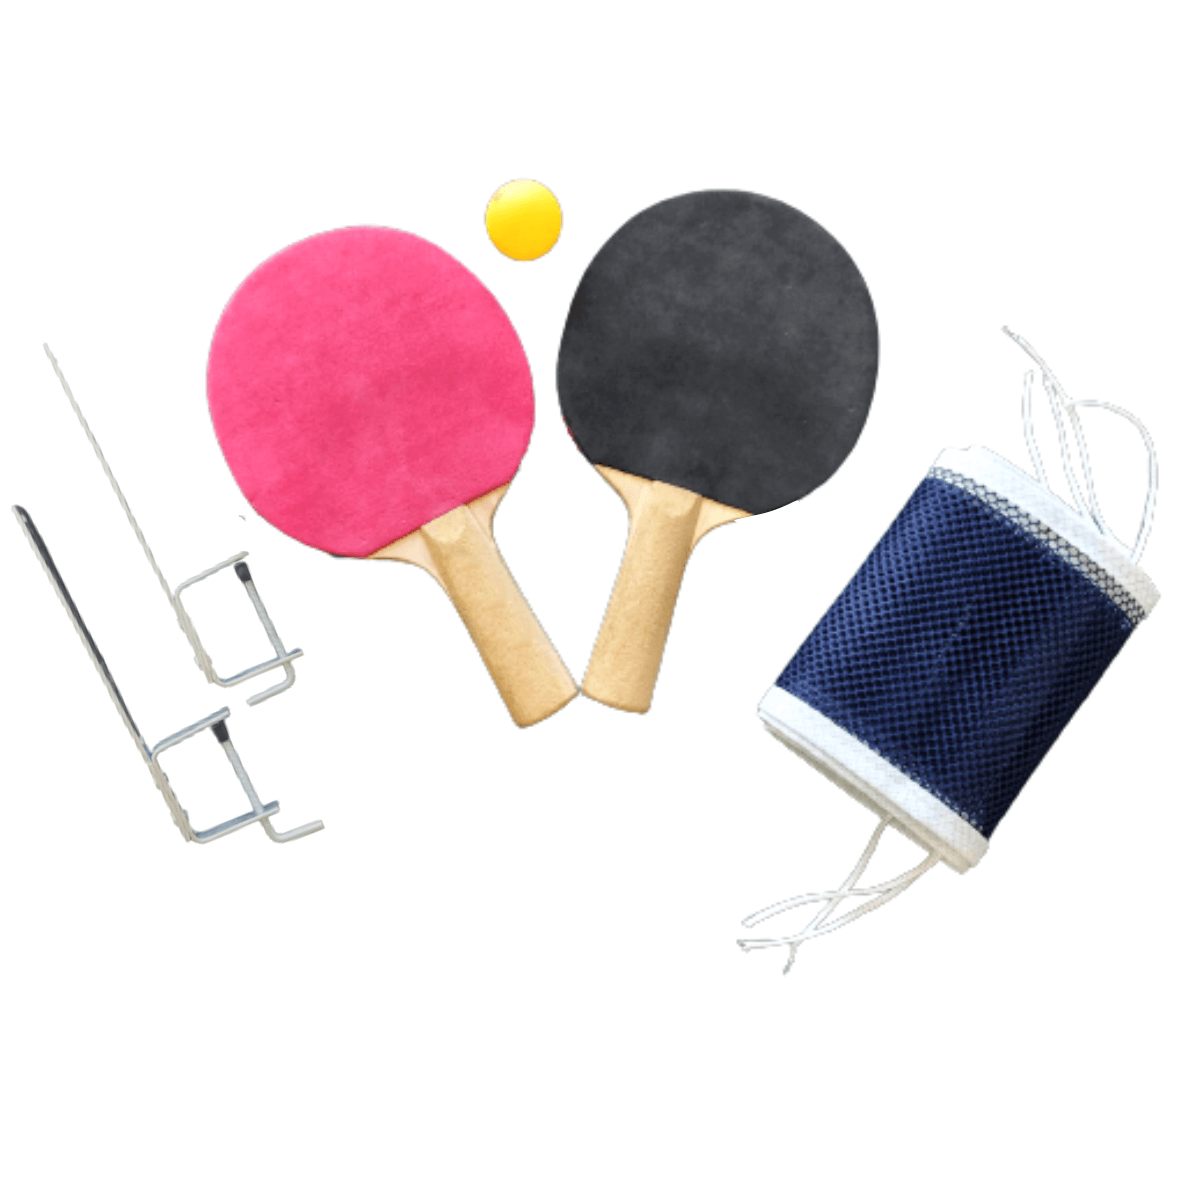 Kit Ping Pong Luxo - 2 Raquetes, 1 Bolinha + Rede com suportes